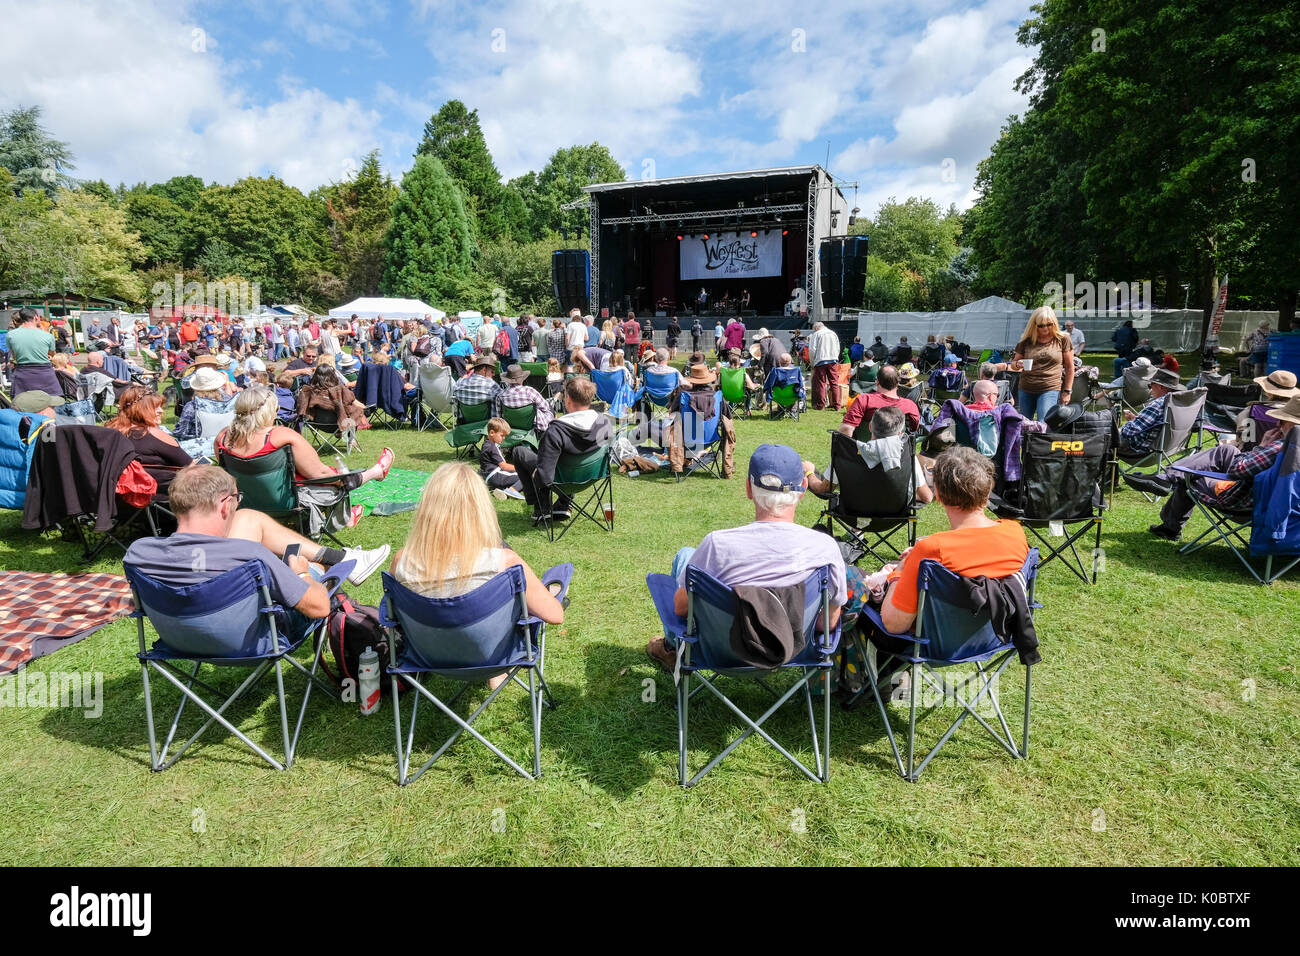 Weyfest music festival, le Centre de la vie rurale, Tilford, Surrey, Angleterre, le 19 août 2017 Banque D'Images